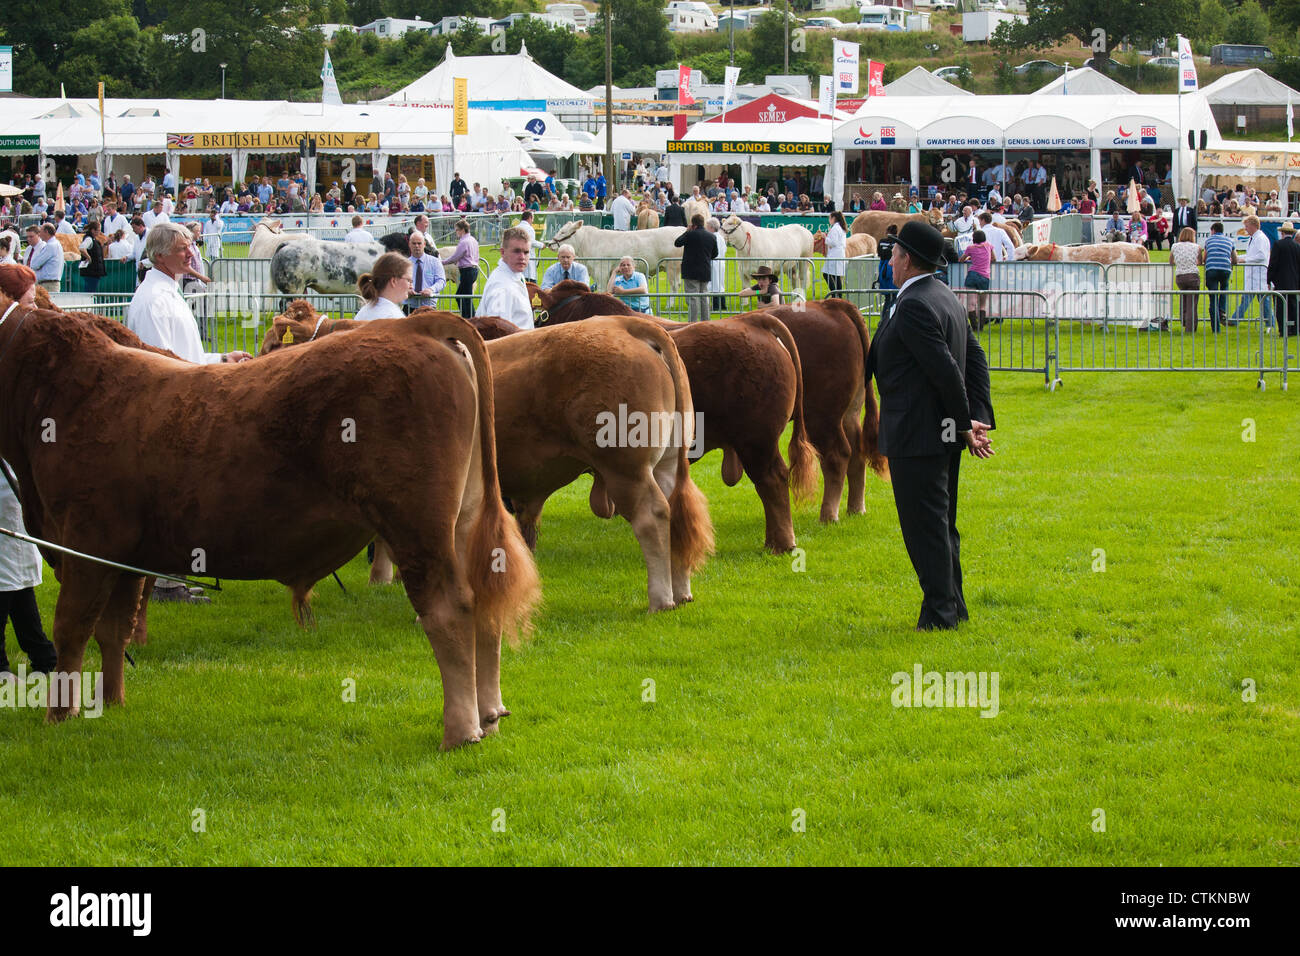 Toros siendo juzgado ar Royal Welsh Show agrícola Foto de stock